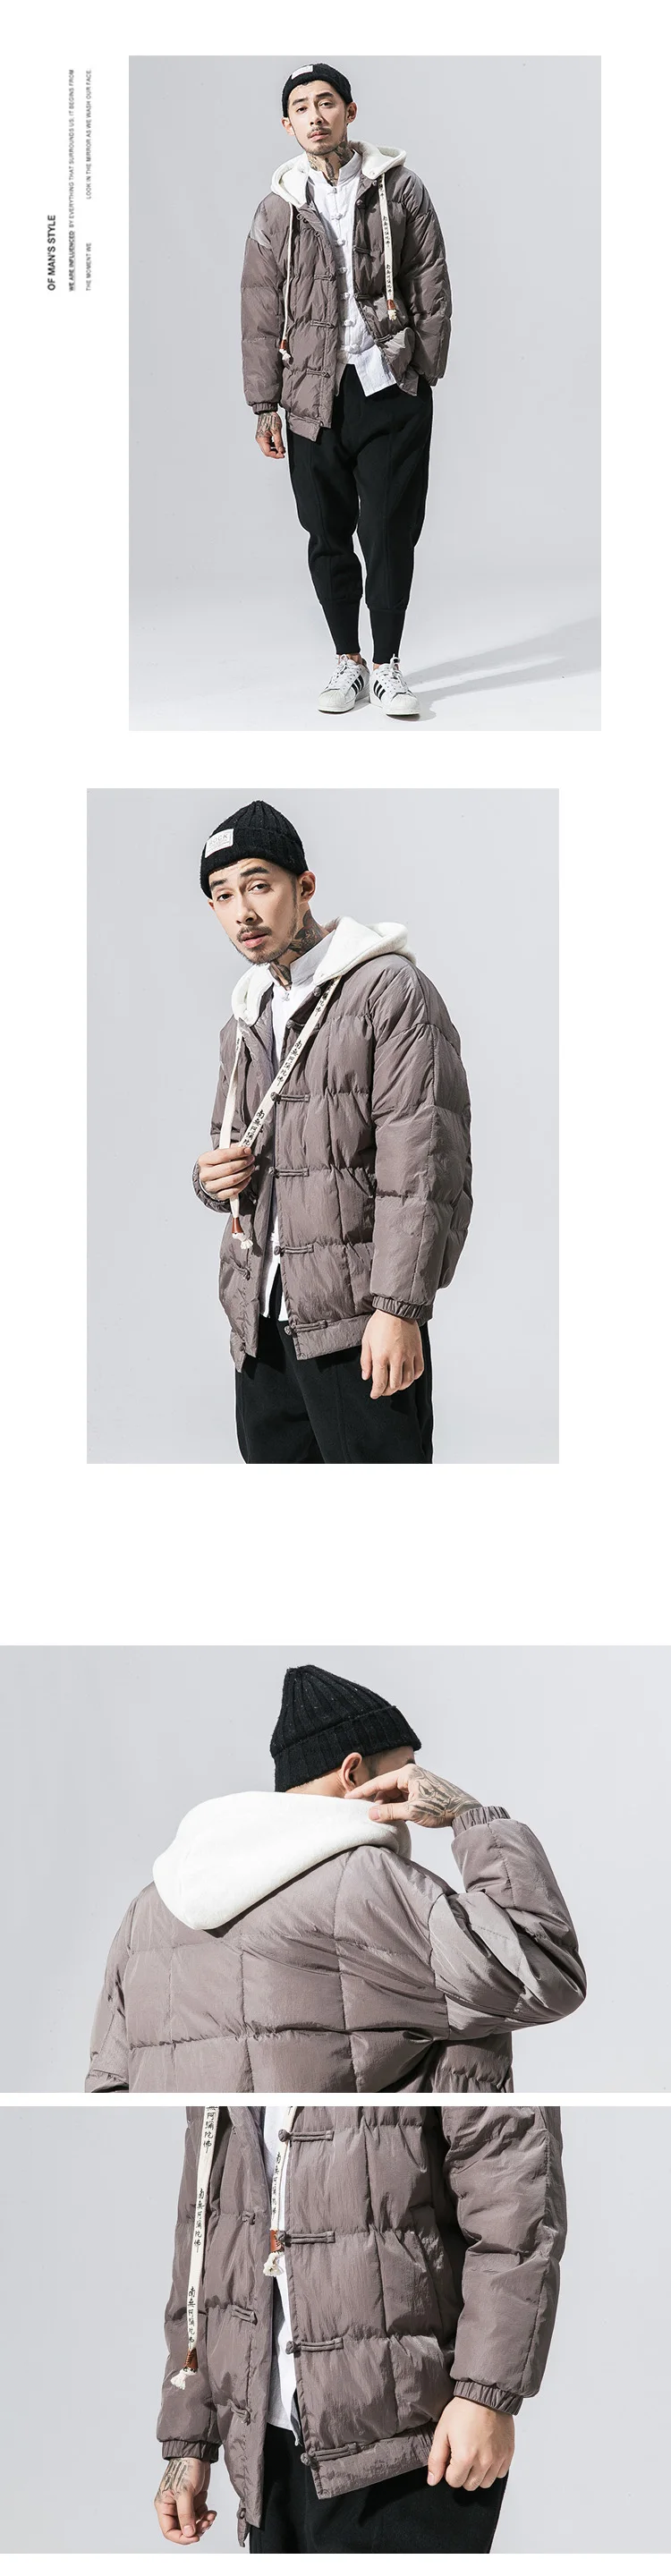 MR-DONOO зима Япония Корея мужская хлопковая стеганая куртка тепловое пальто мужская верхняя одежда мужская одежда Китайский Стиль парки B375-Y12